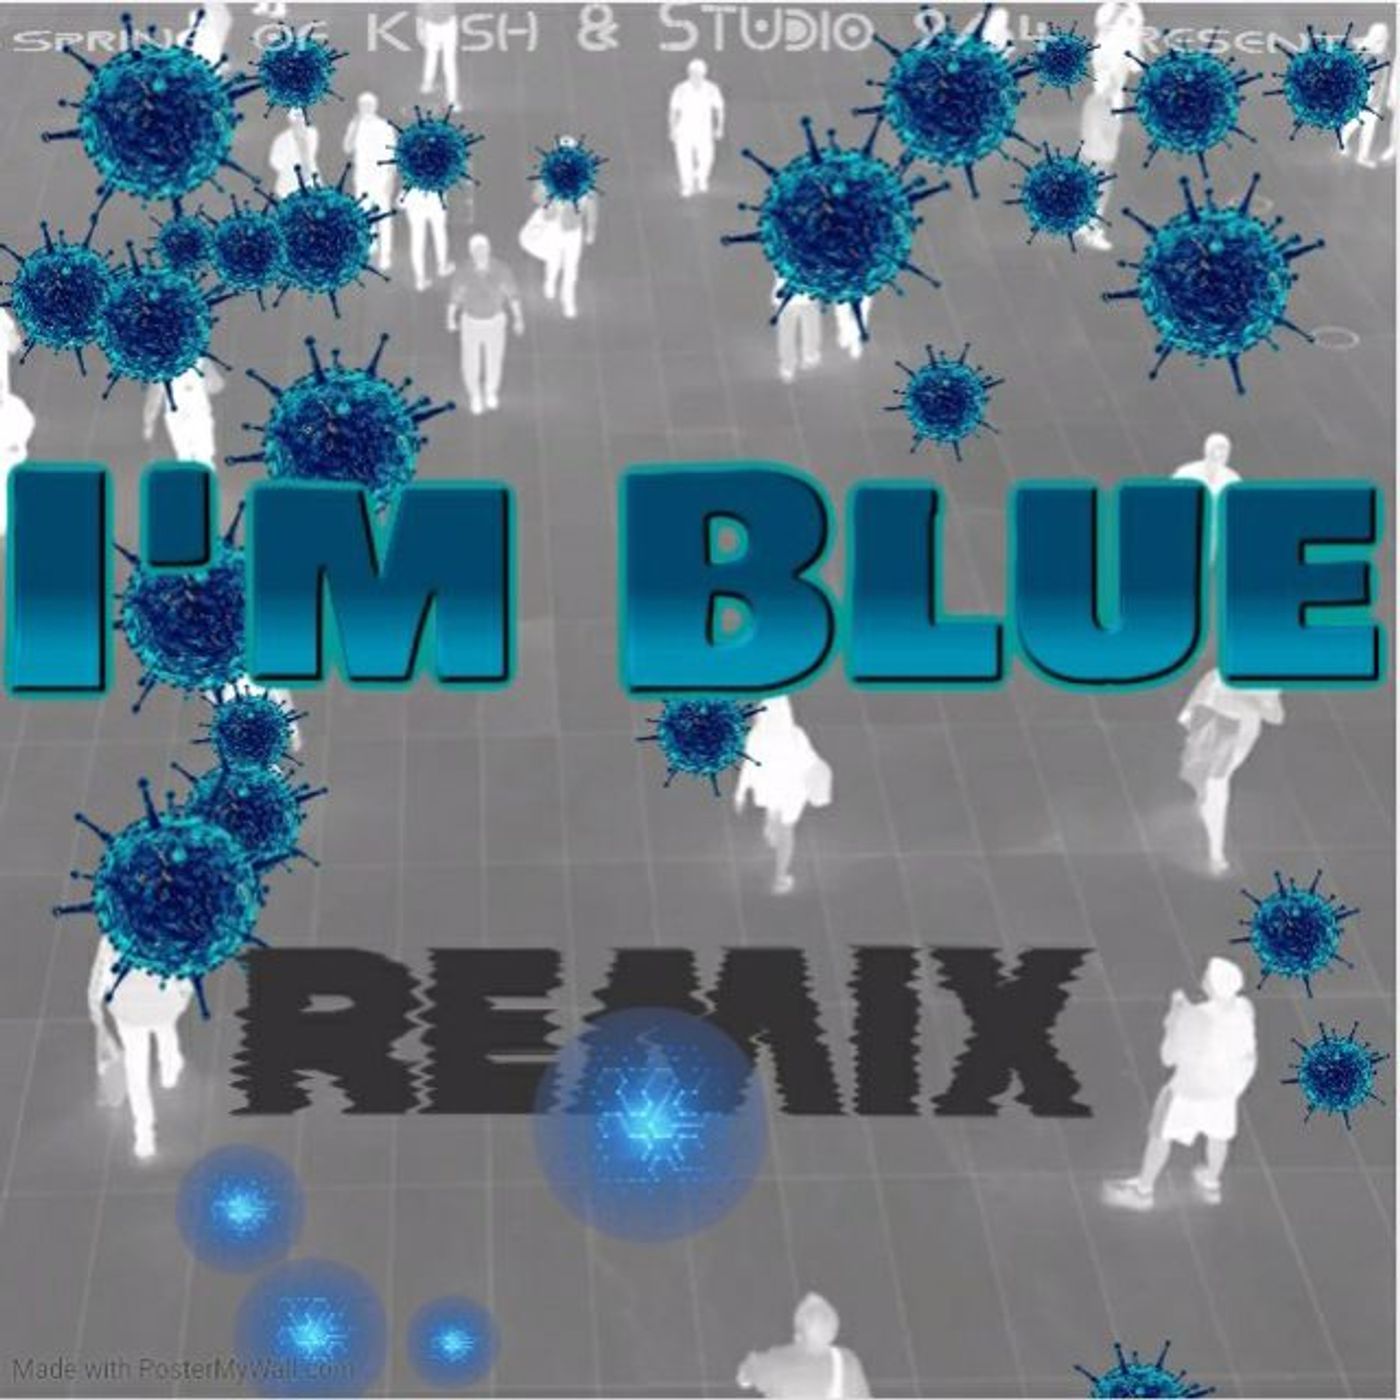 Spring of Kush - I'm Blue Rmx  (mastered)